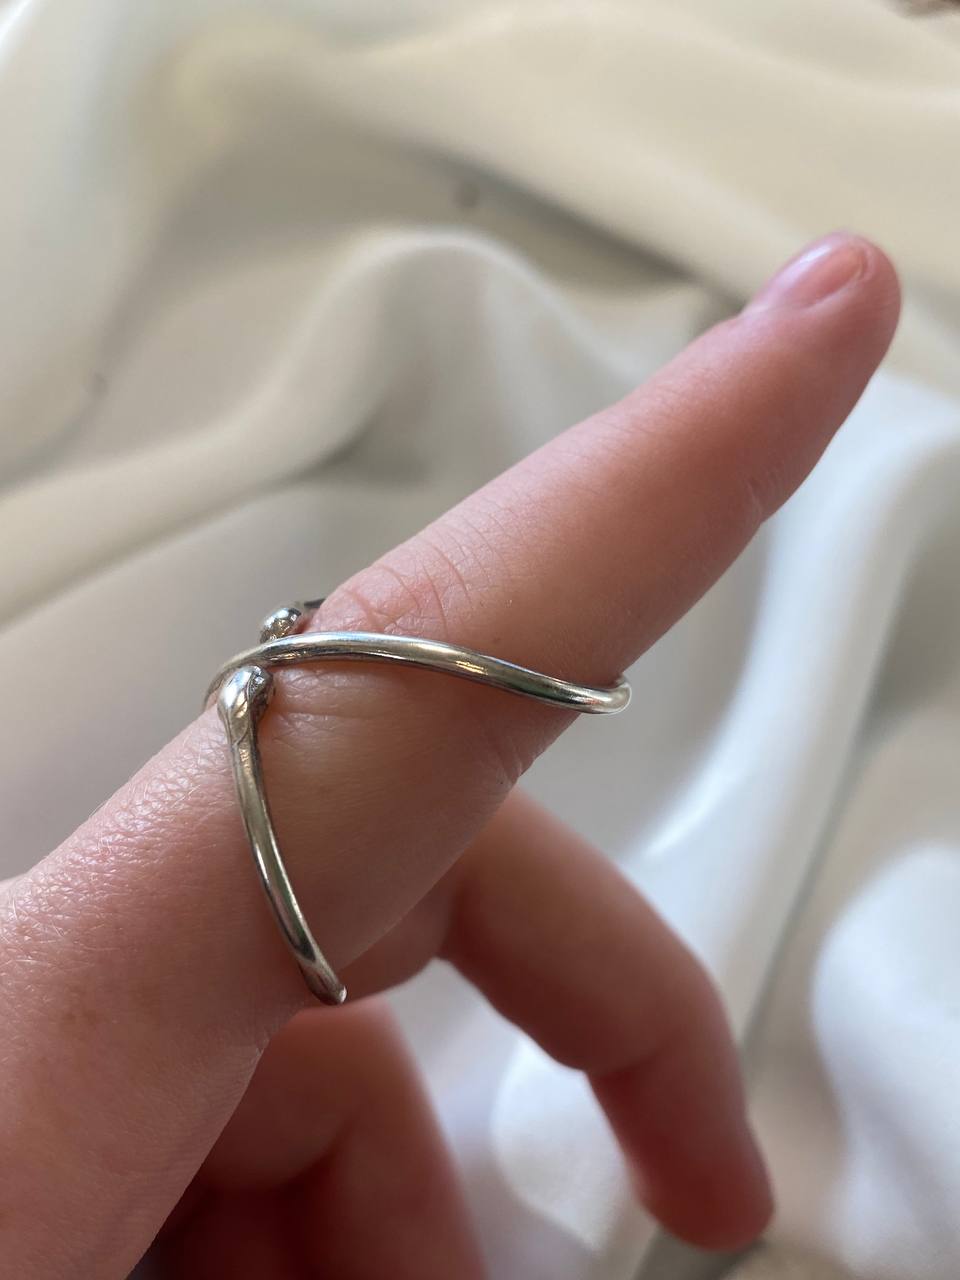 ring splints for arthritis fingers, trigger thumb